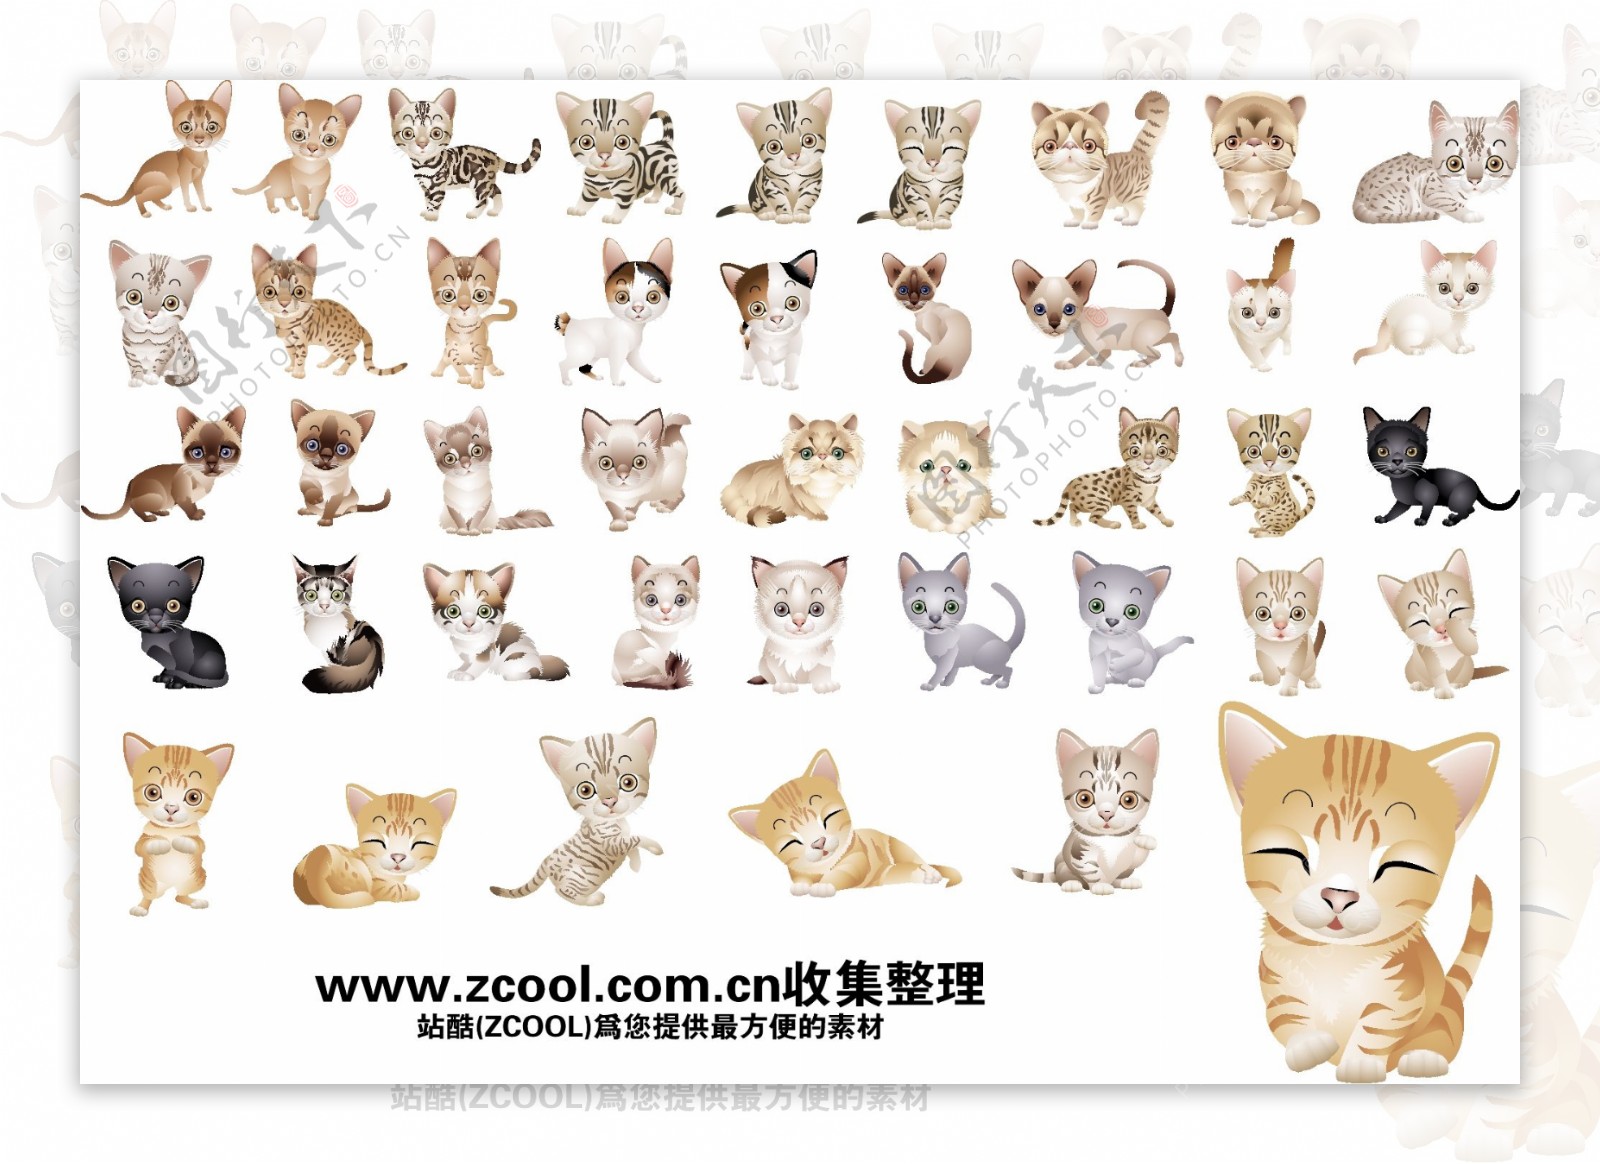 40版本的各种可爱的小猫咪矢量素材